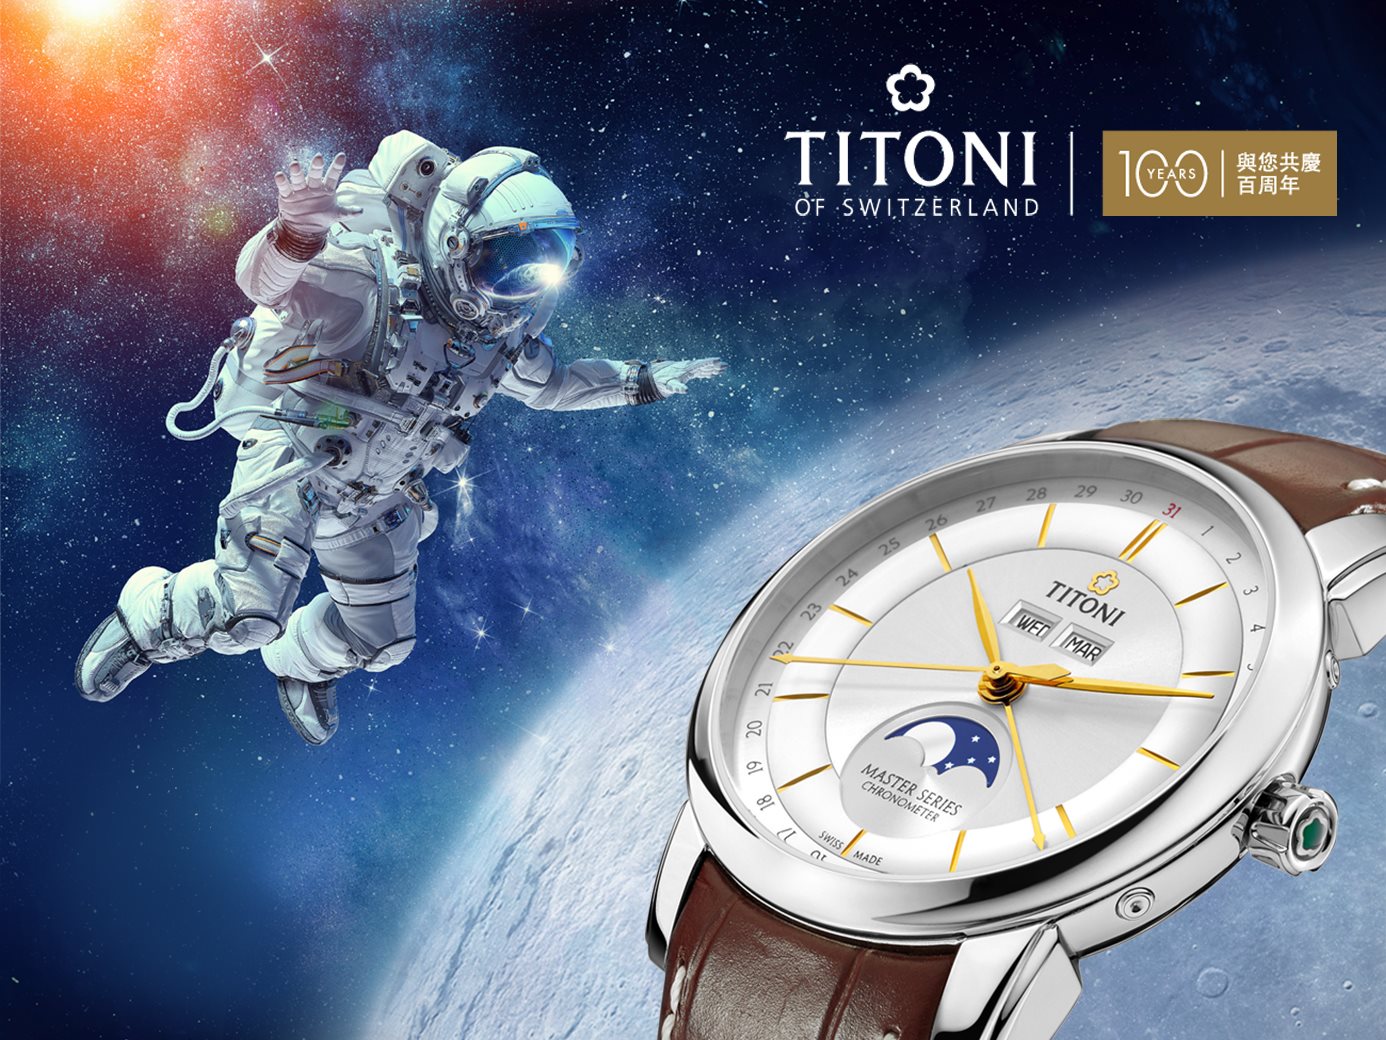 百年瑞士機械錶專家TITONI 本年度高顏值、高CP值月相錶首選